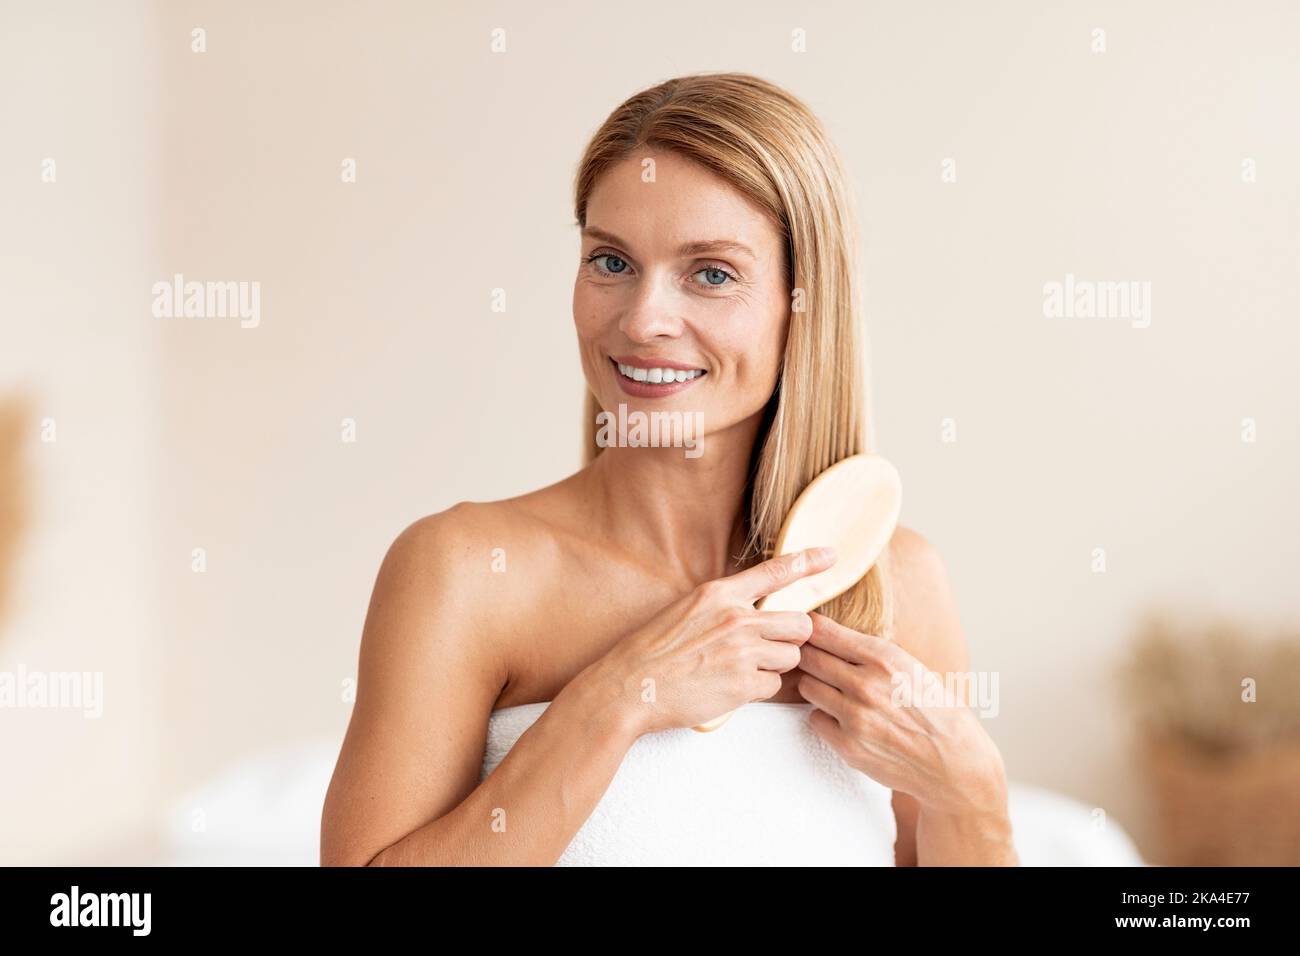 Morgendliche Schönheitsroutine. Attraktive reife Frau, die ihr blondes Haar mit Kamm putzt und in ein Badetuch gehüllt steht Stockfoto